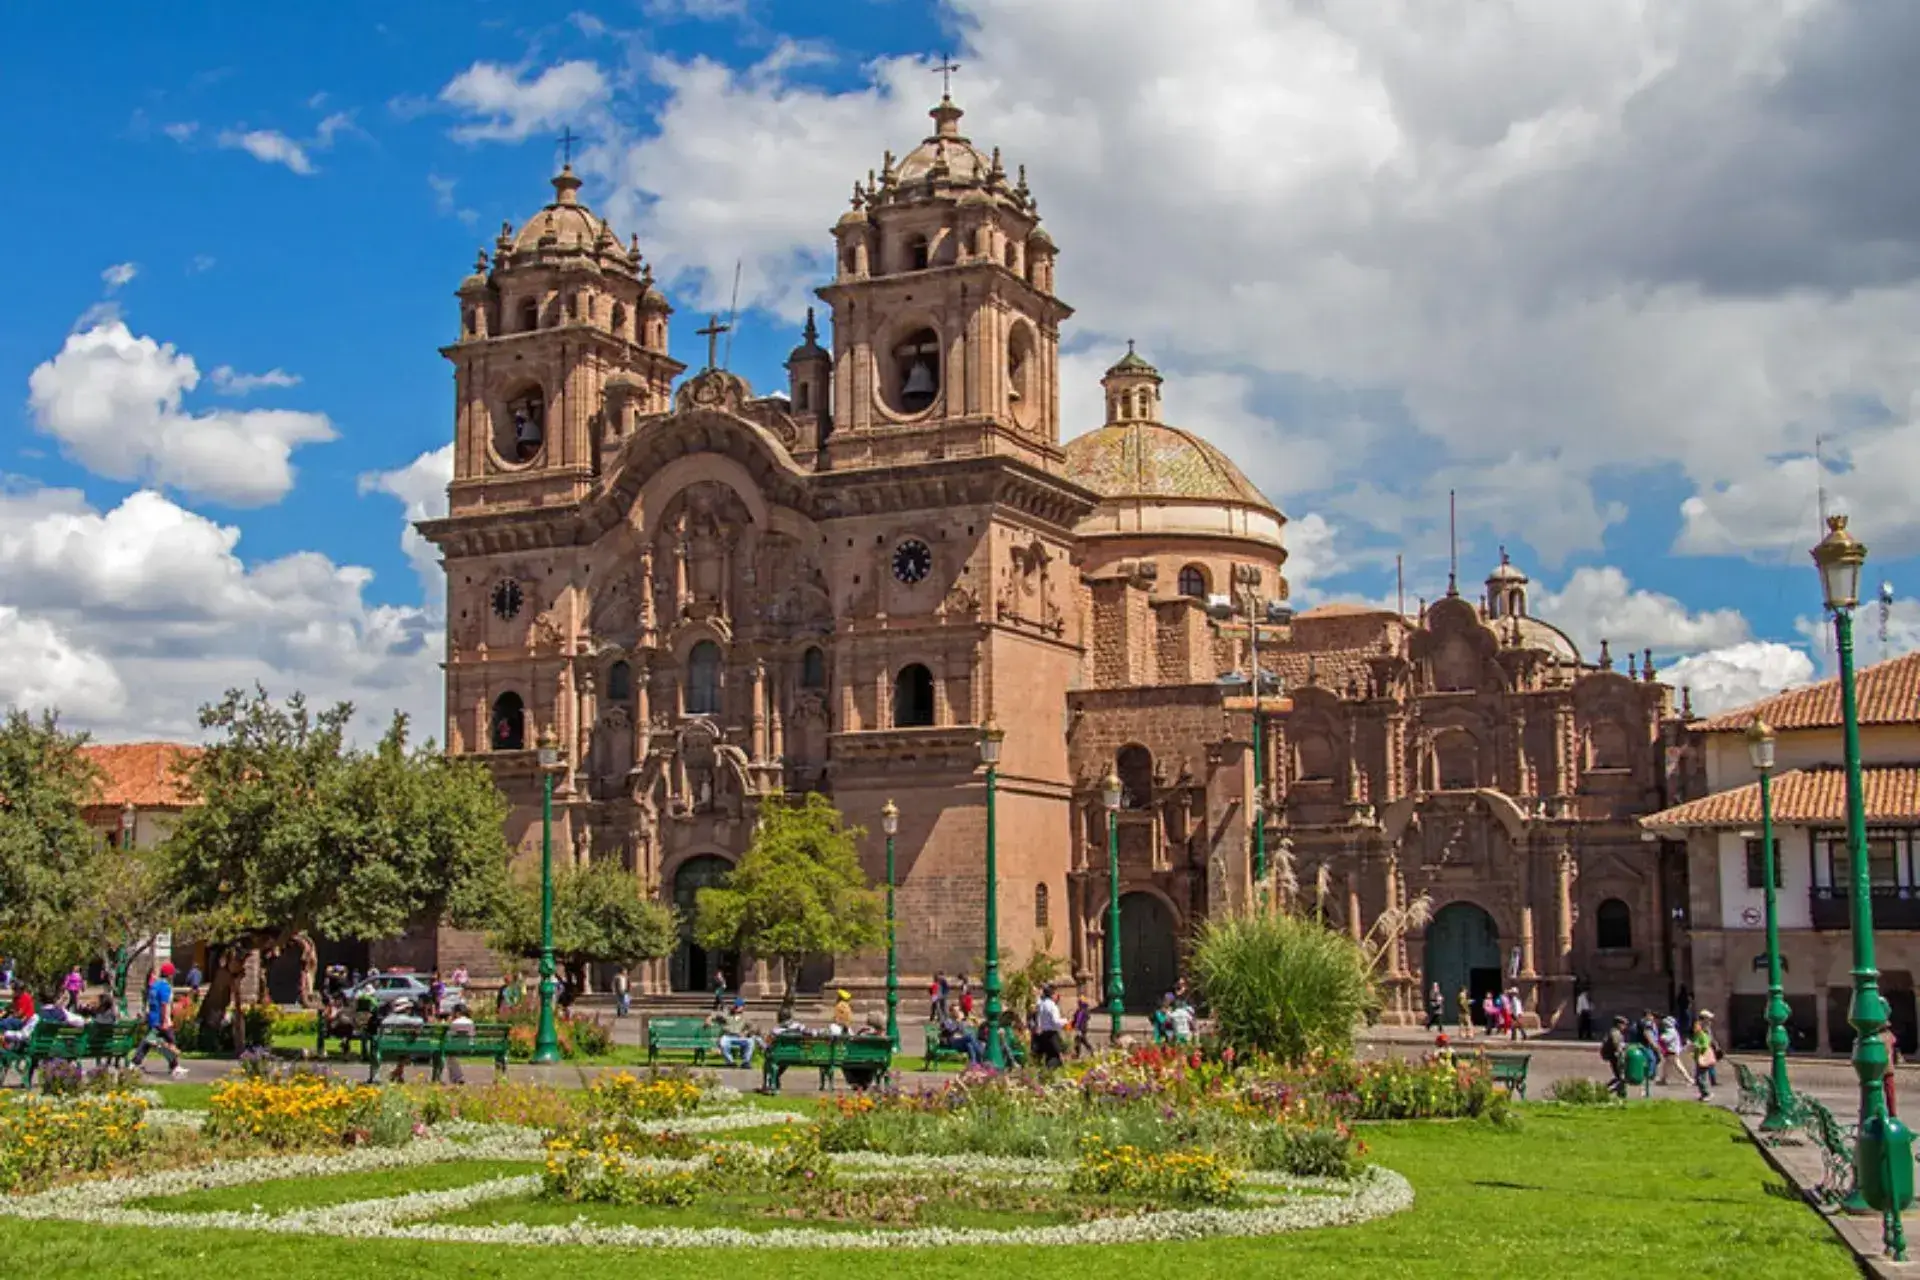 La Catedral de Cuzco y delante de ella una plaza con árboles y bancos para sentarse